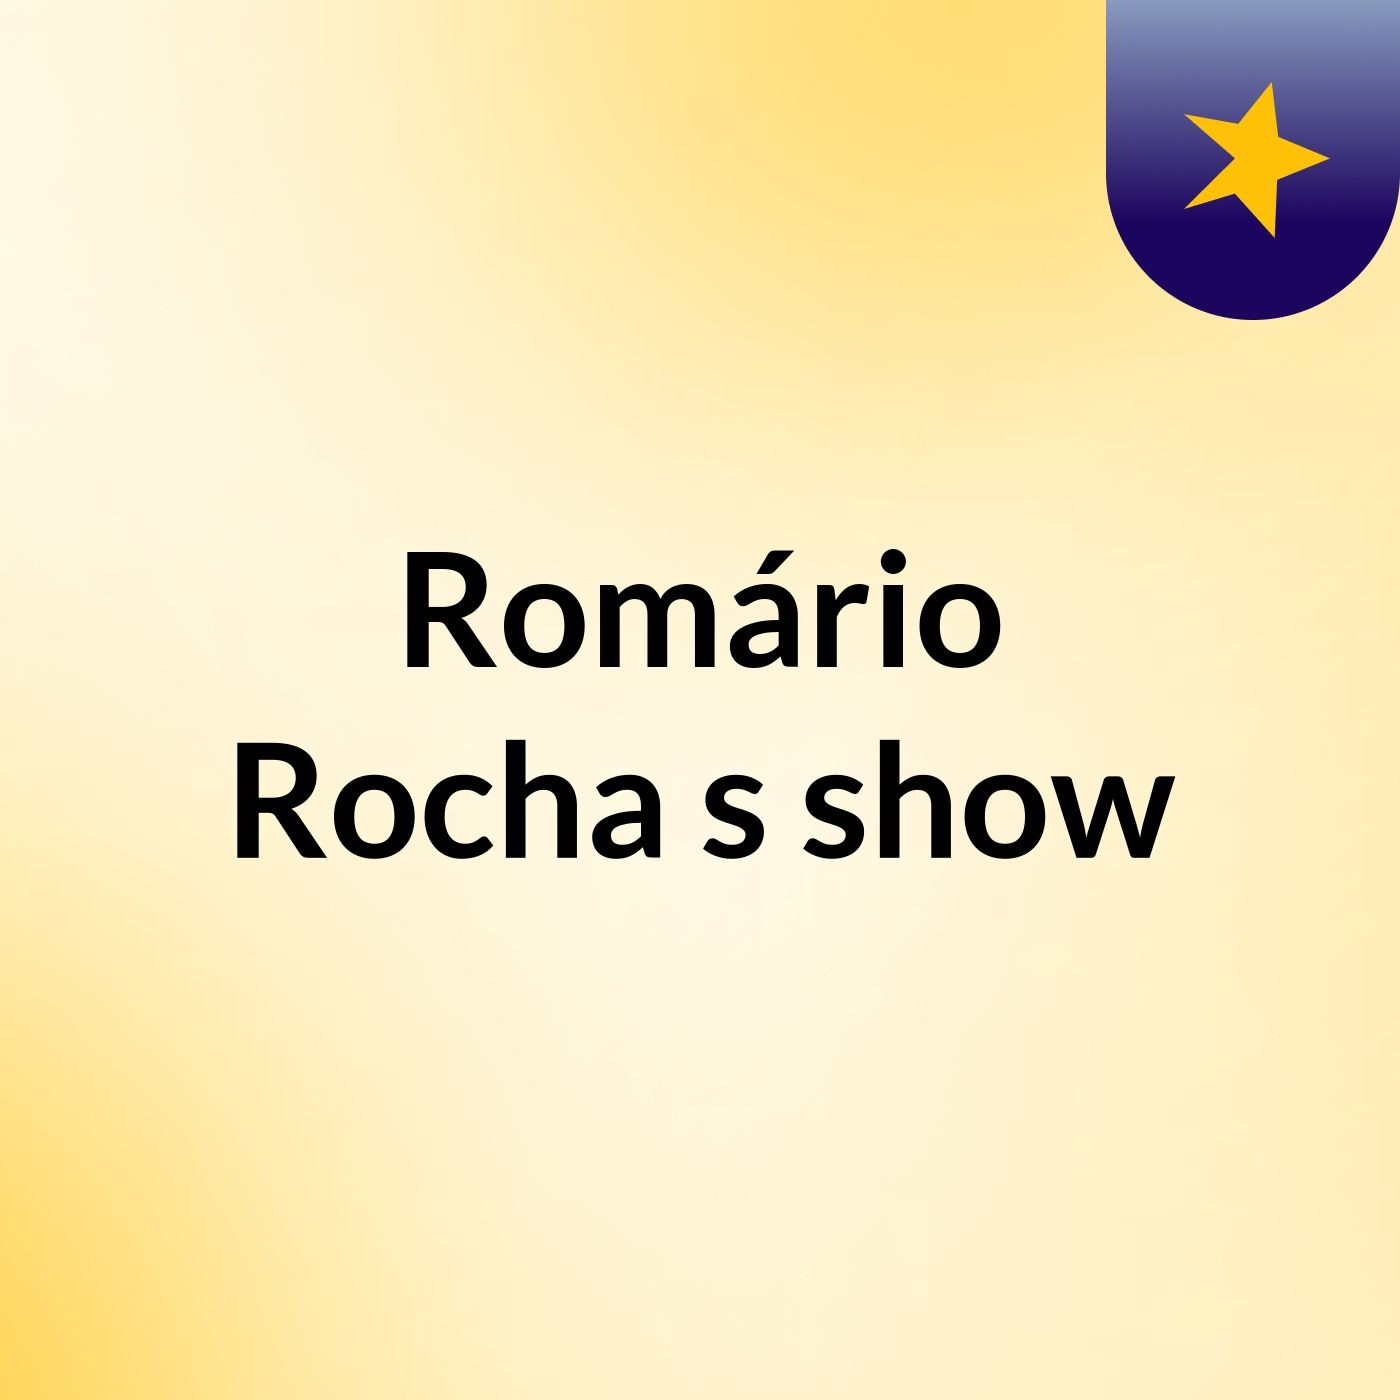 Romário Rocha's show